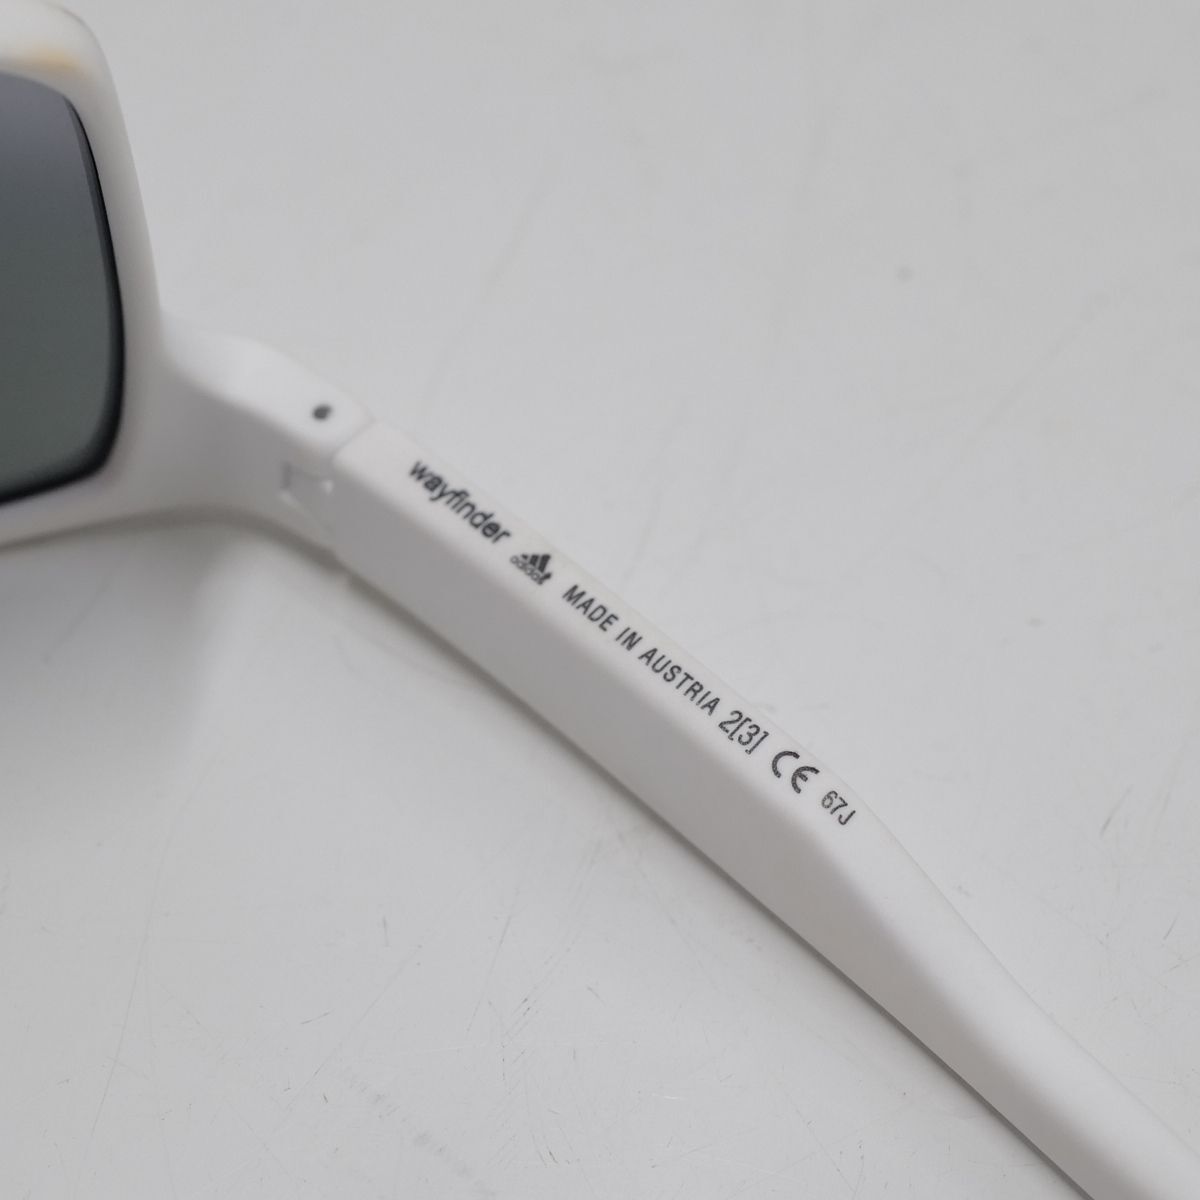 adidas WAYFINDER спортивные солнцезащитные очки USED прекрасный товар way искатель бег Golf зеркало унисекс для мужчин и женщин б/у X5417